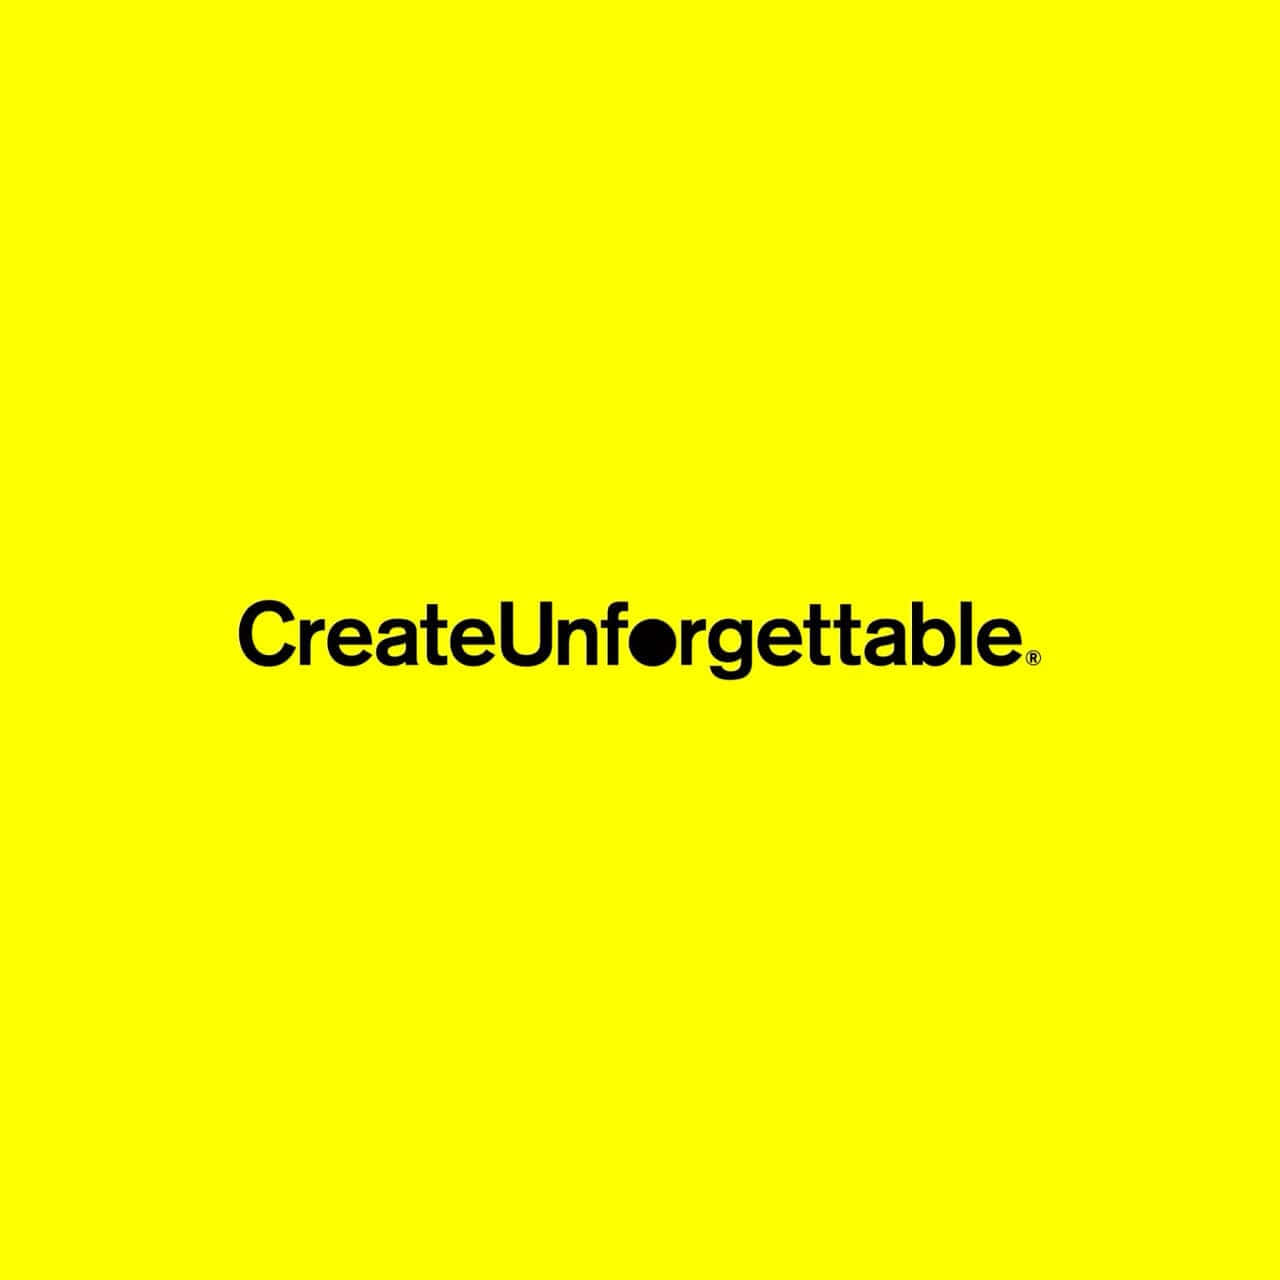 Create Unforgettable Motivational Slogan Wallpaper